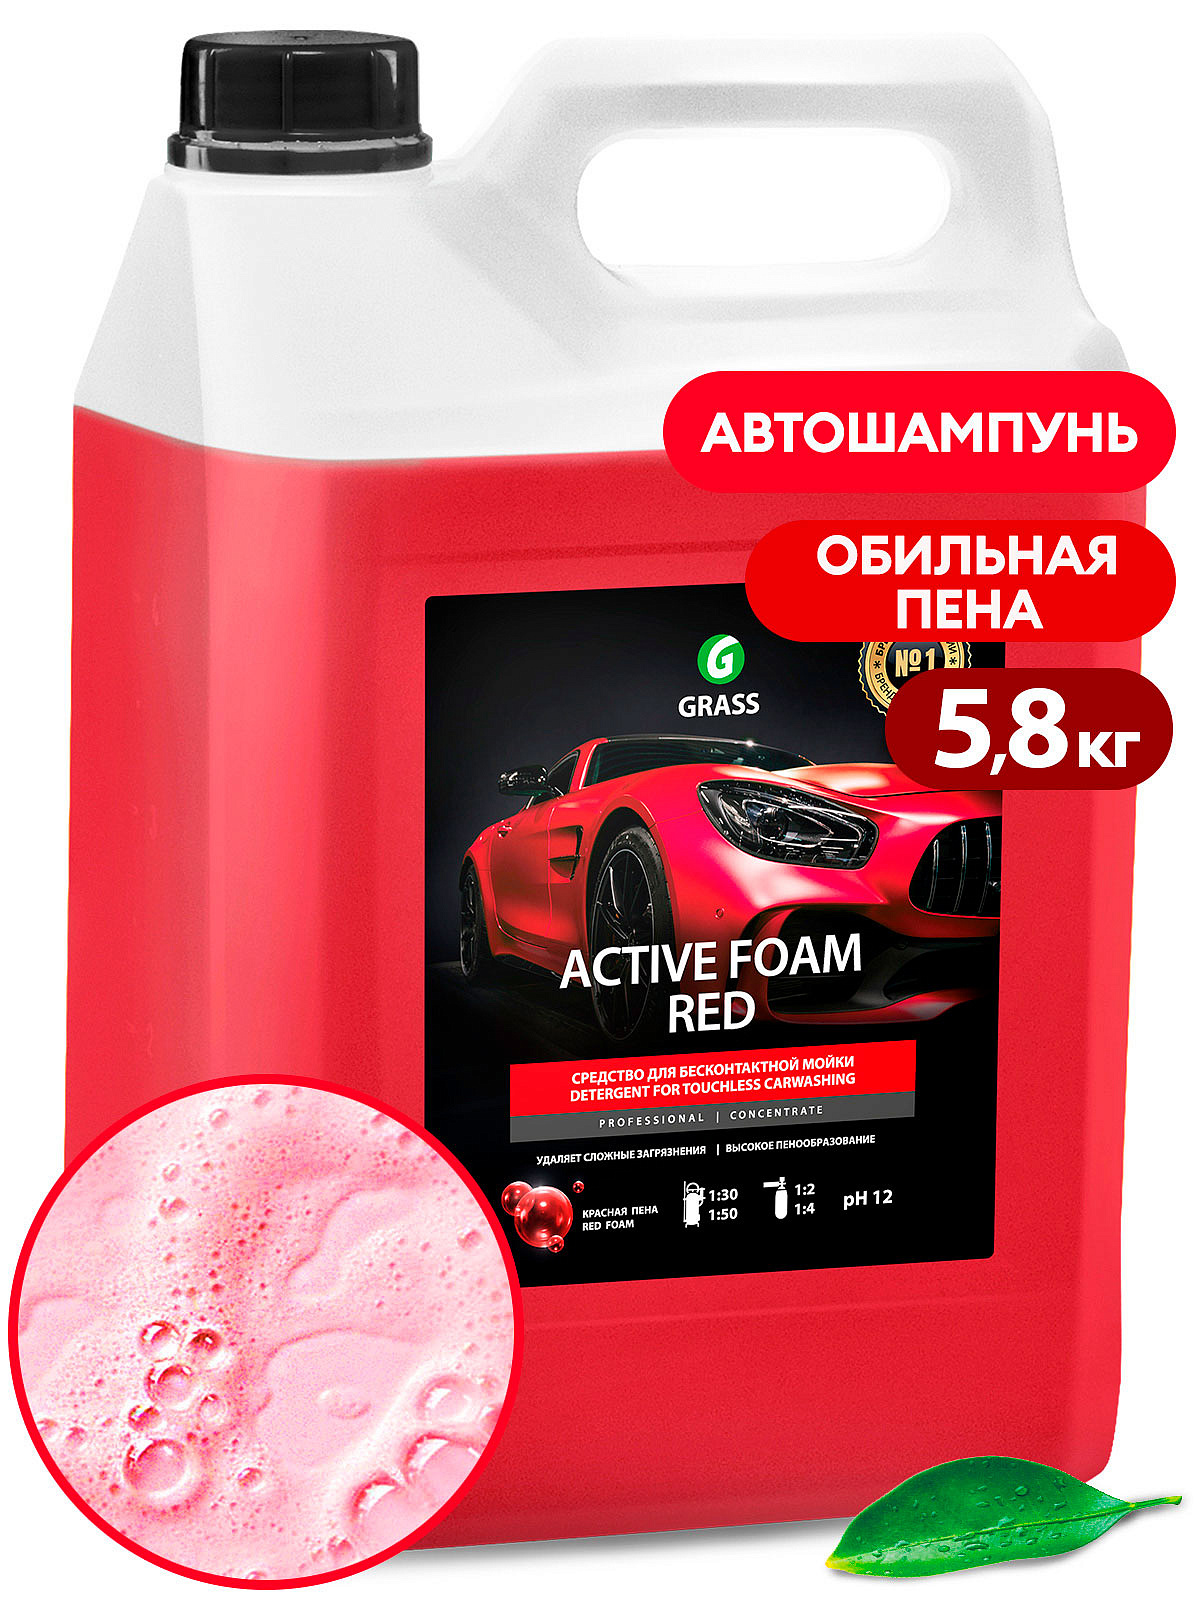 Автохимия для бесконтактной мойки. Пена активная "Active Foam Red" 5,8л. Active Foam Red 5.8кг. Автошампунь для бесконтактной мойки 5,8 кг "Active Foam Red". Автошампунь "Active Foam Red" производитель.